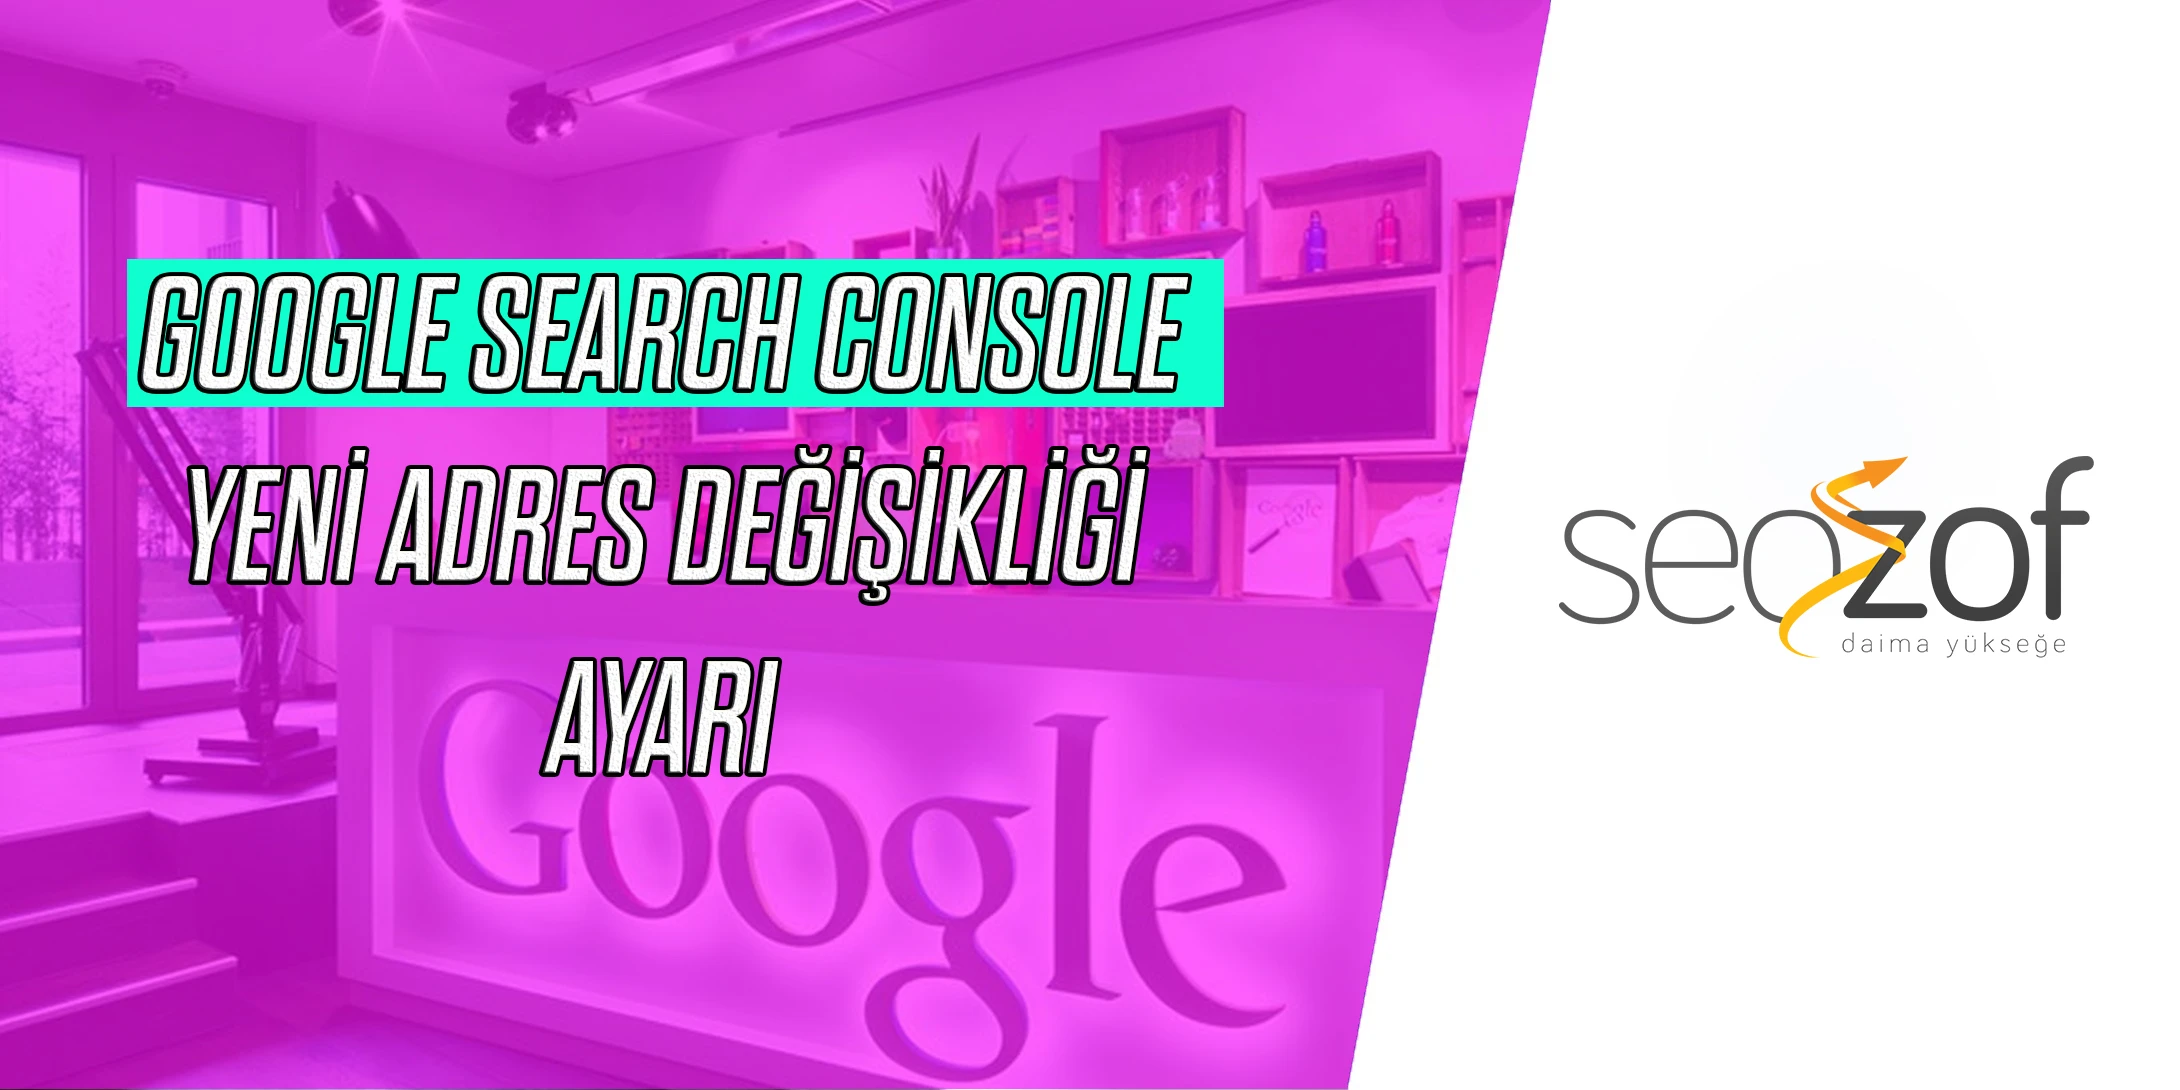 Google Search Console Yeni Adres Değişikliği Ayarı